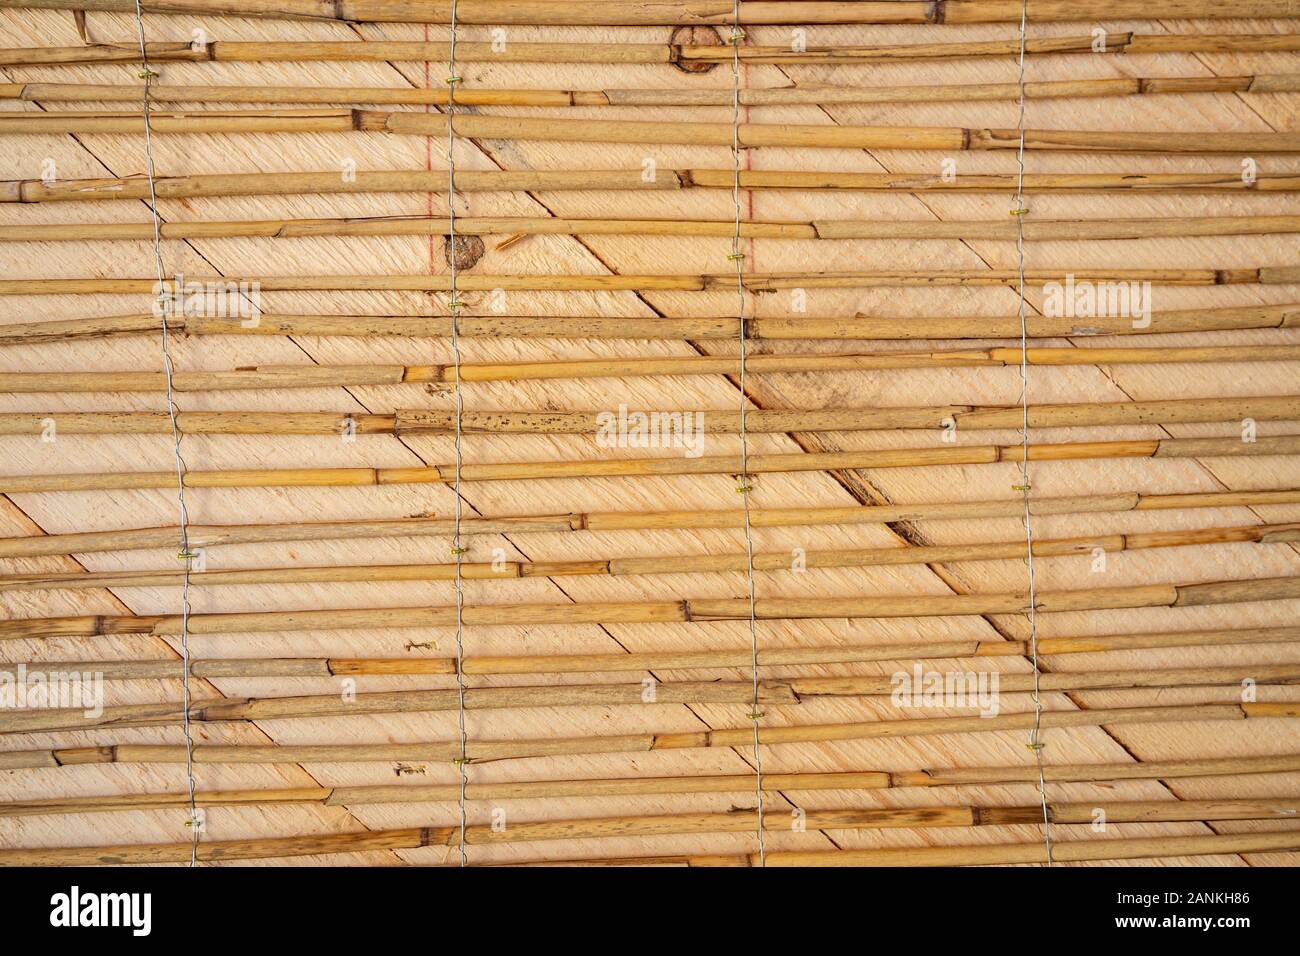 Fissa i tappetini a lamelle su una parete in legno preparato per plastring le pareti con argilla e sabbia - concetto moderno e architettura ecologica Foto Stock